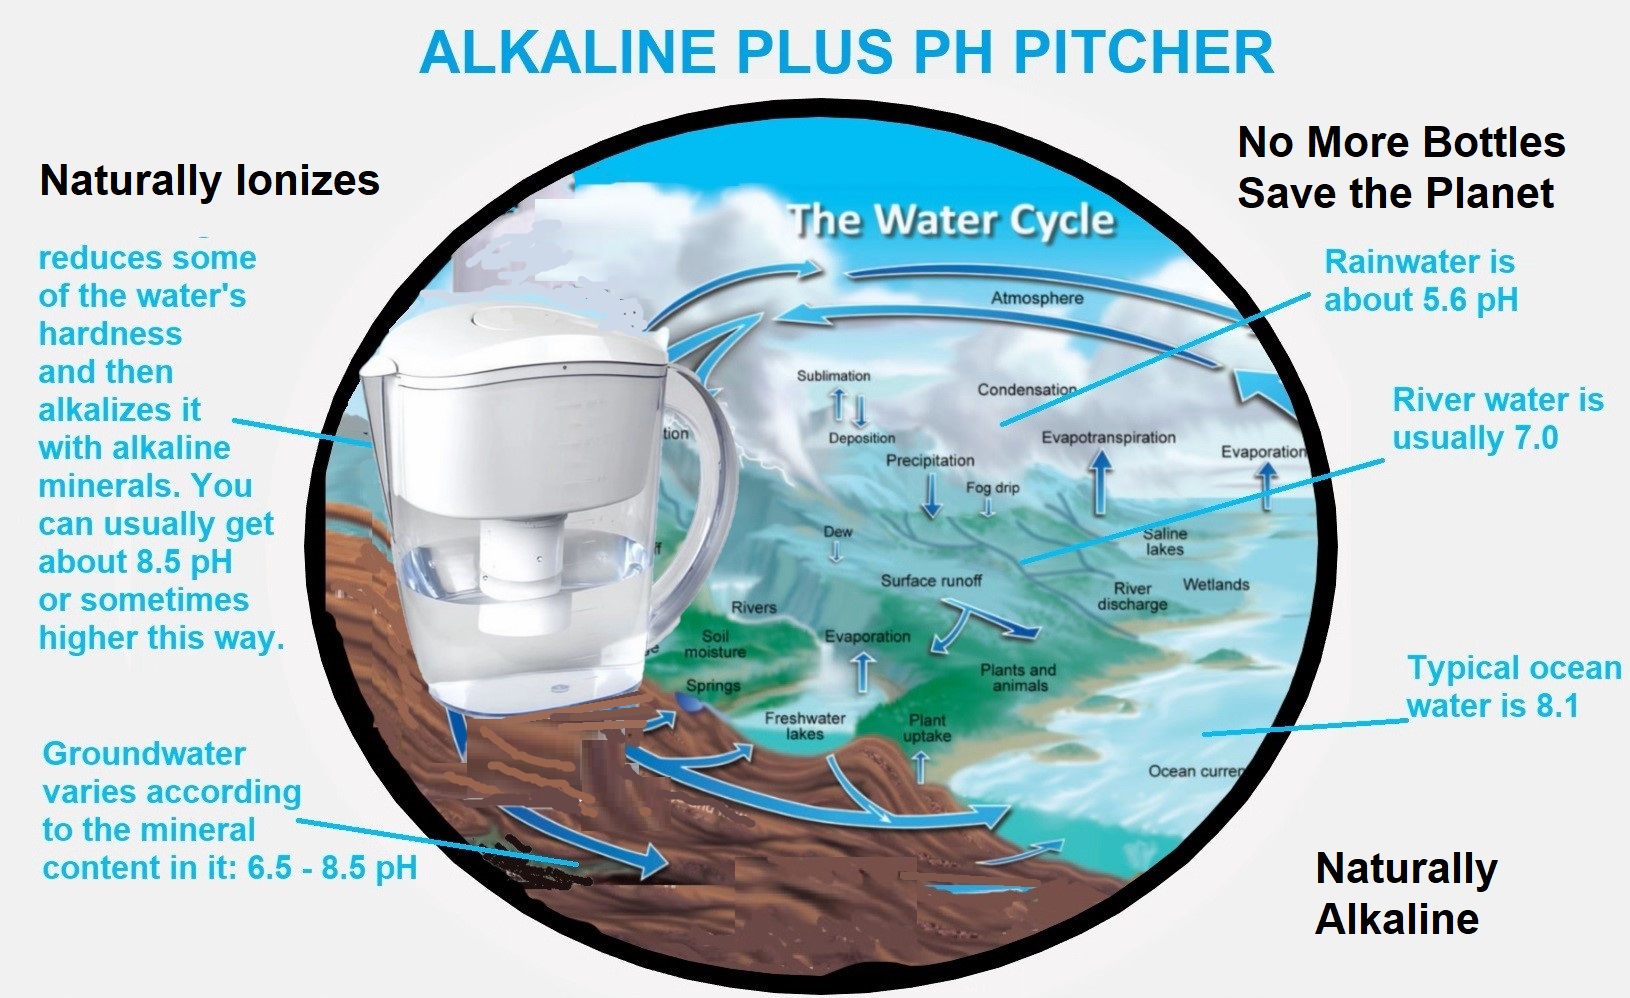 natural-alkaline-plus-ph-pitcher.jpg